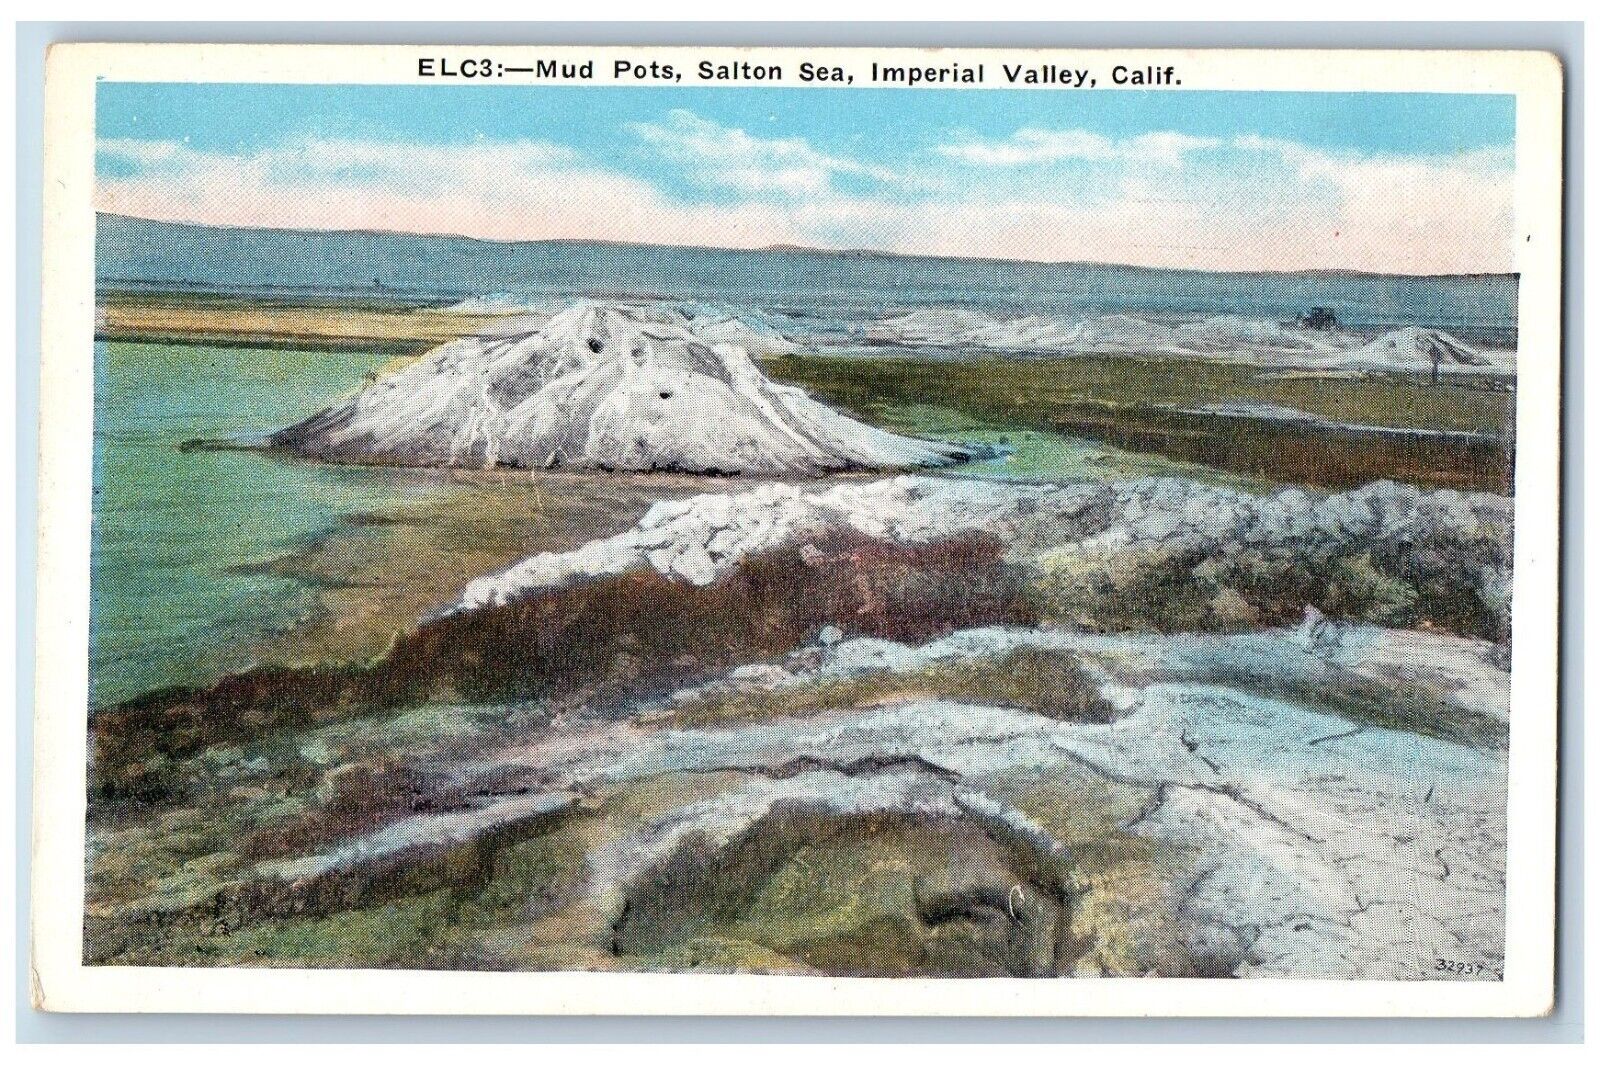 Imperial Valley California Postcard Mud Pots Salton Sea Aerial View 1920 Vintage